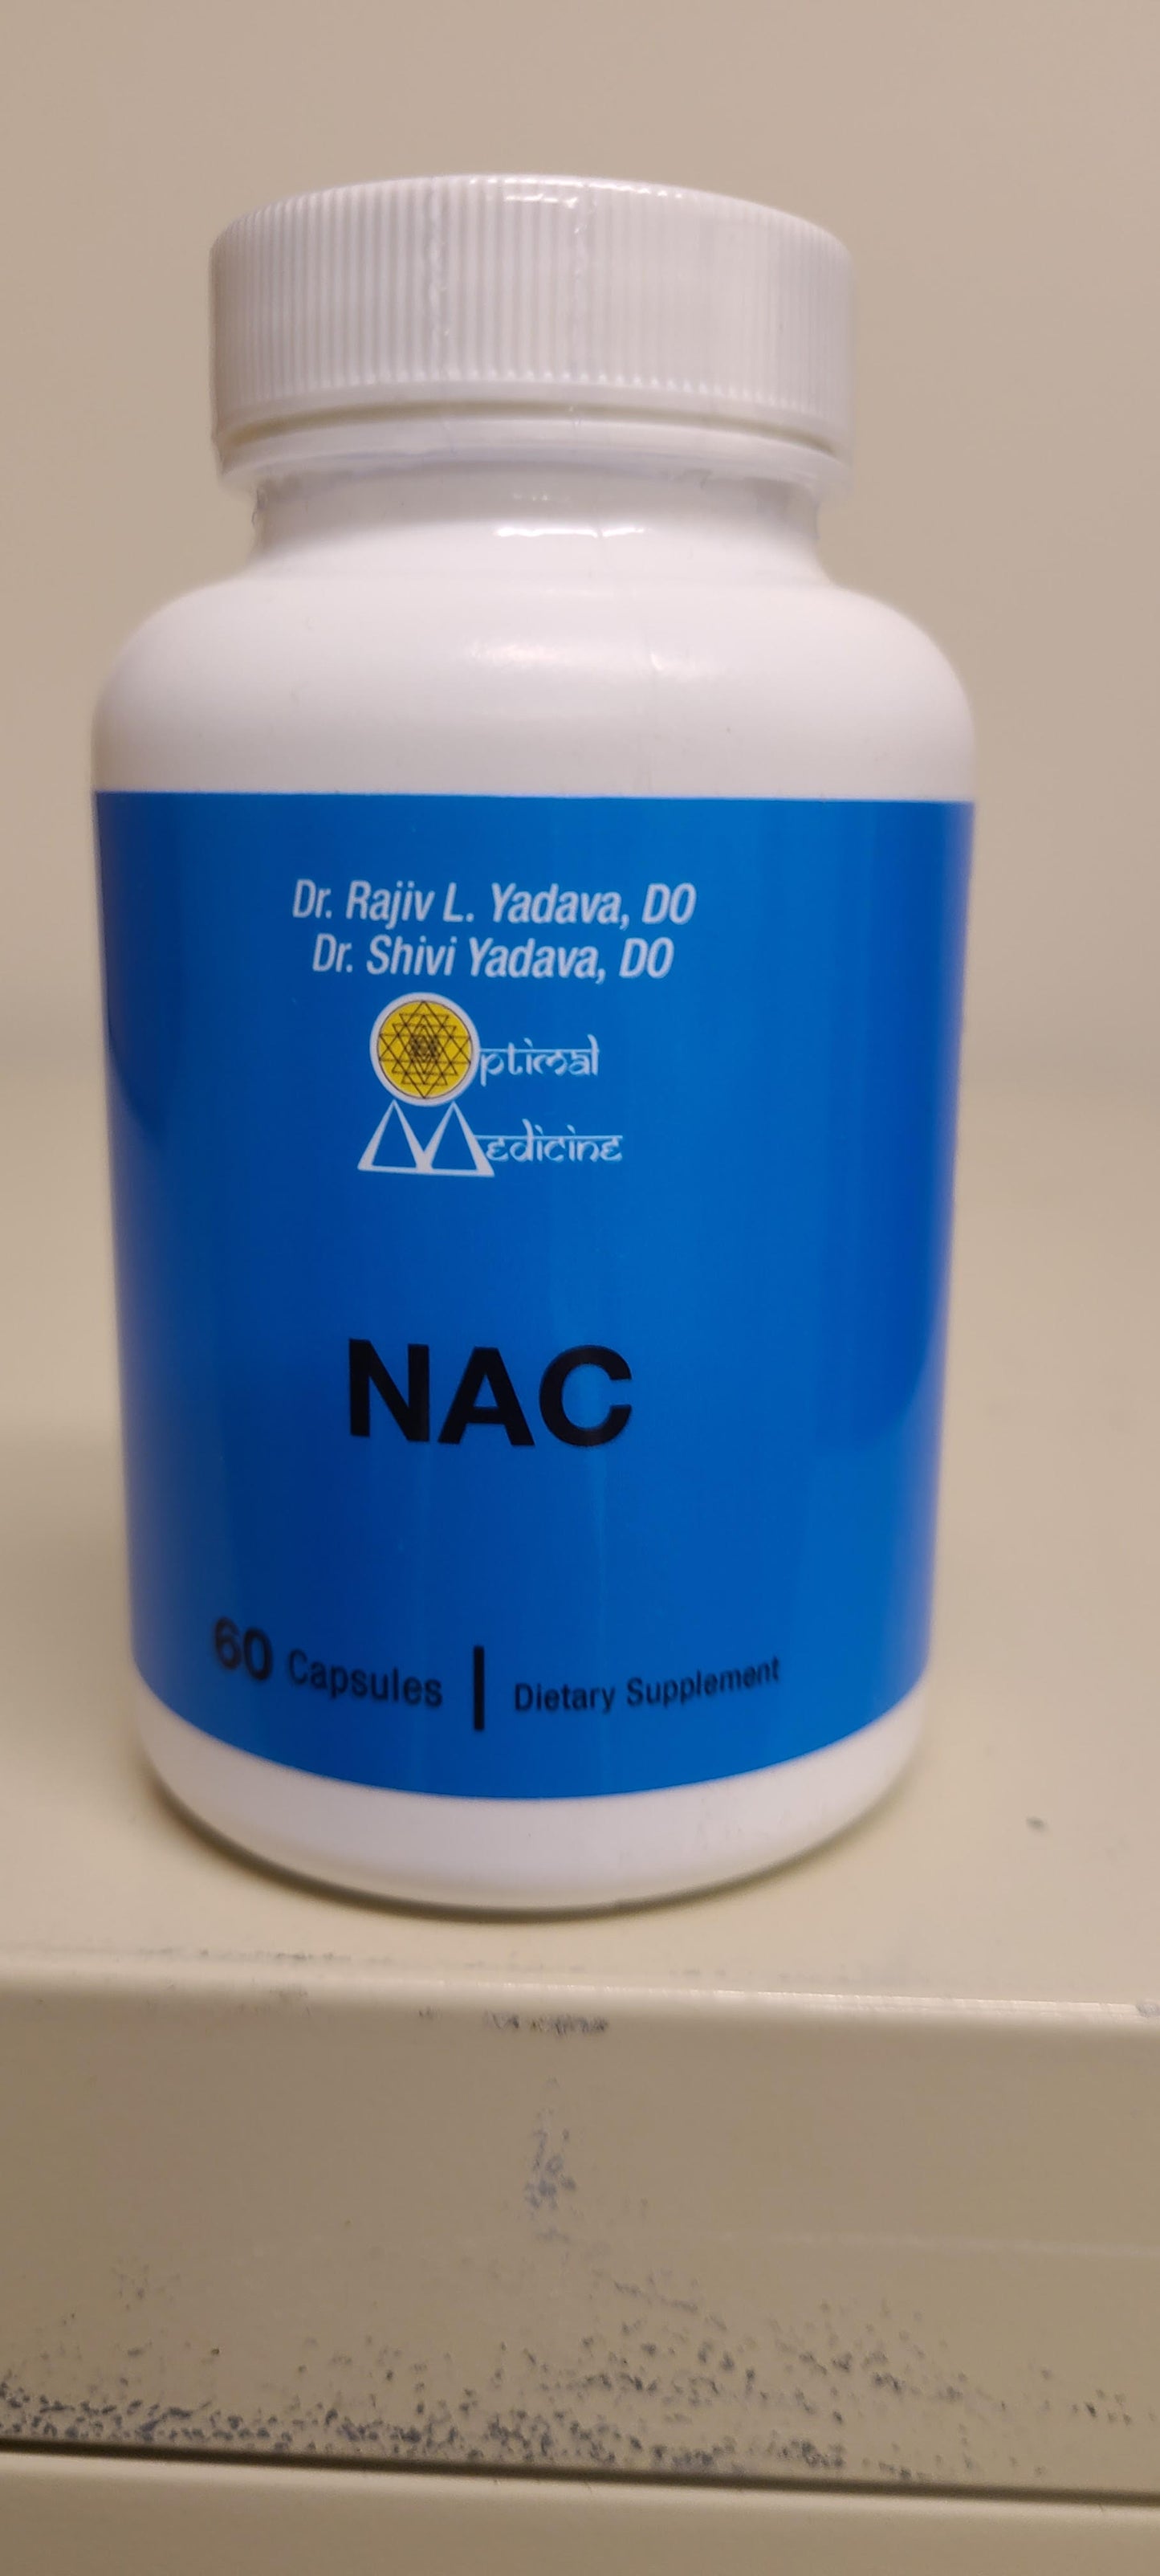 NAC (60 Capsules)